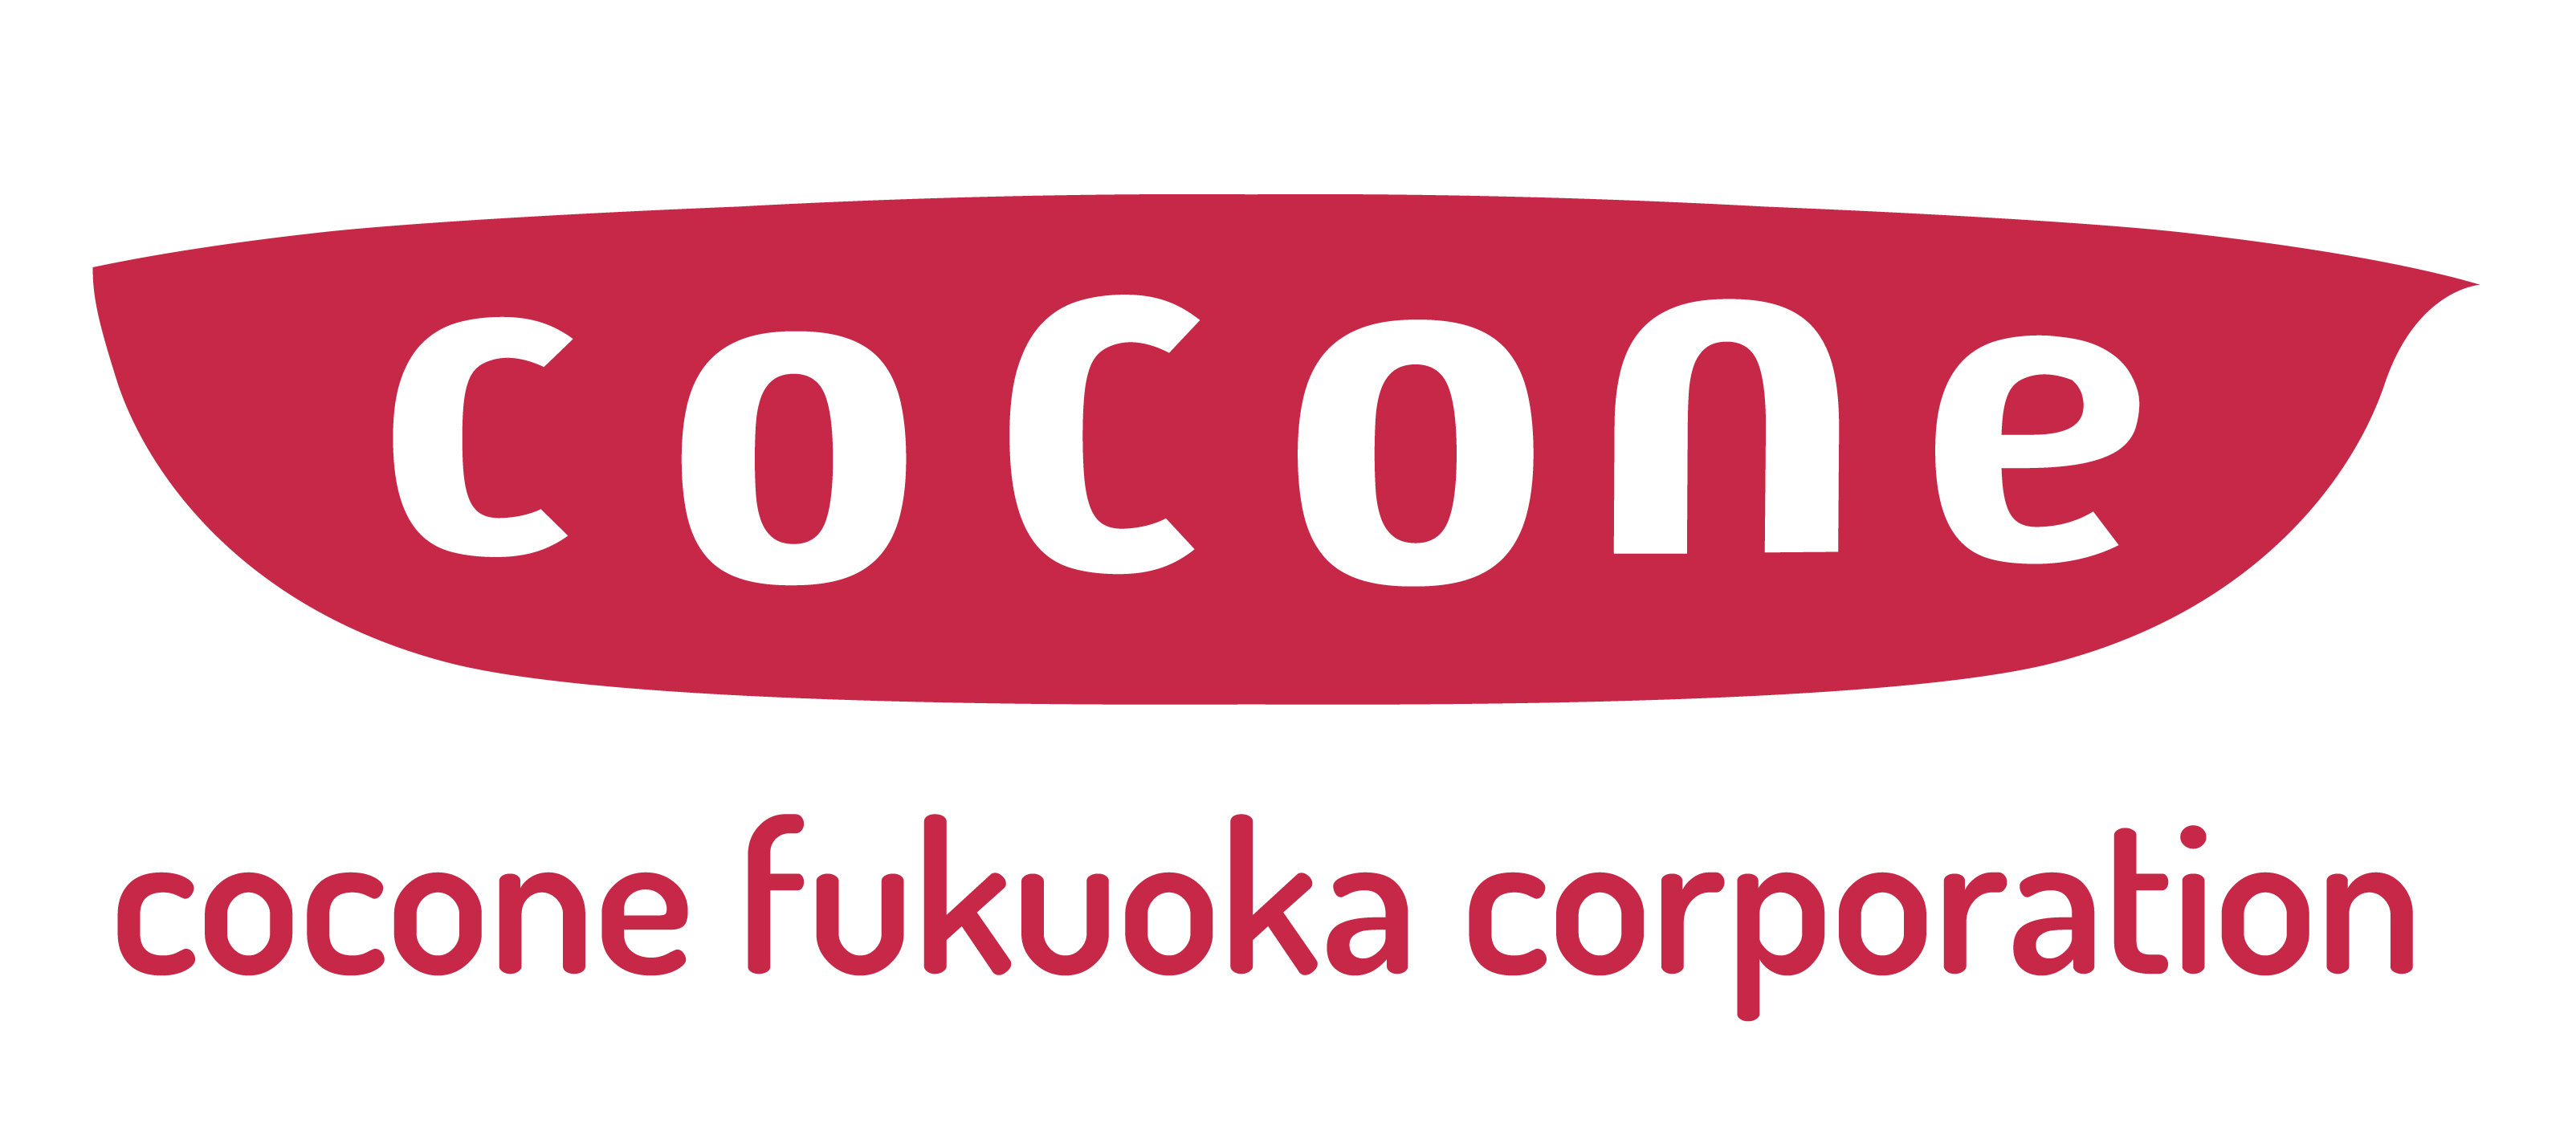 cocone fukuoka株式会社